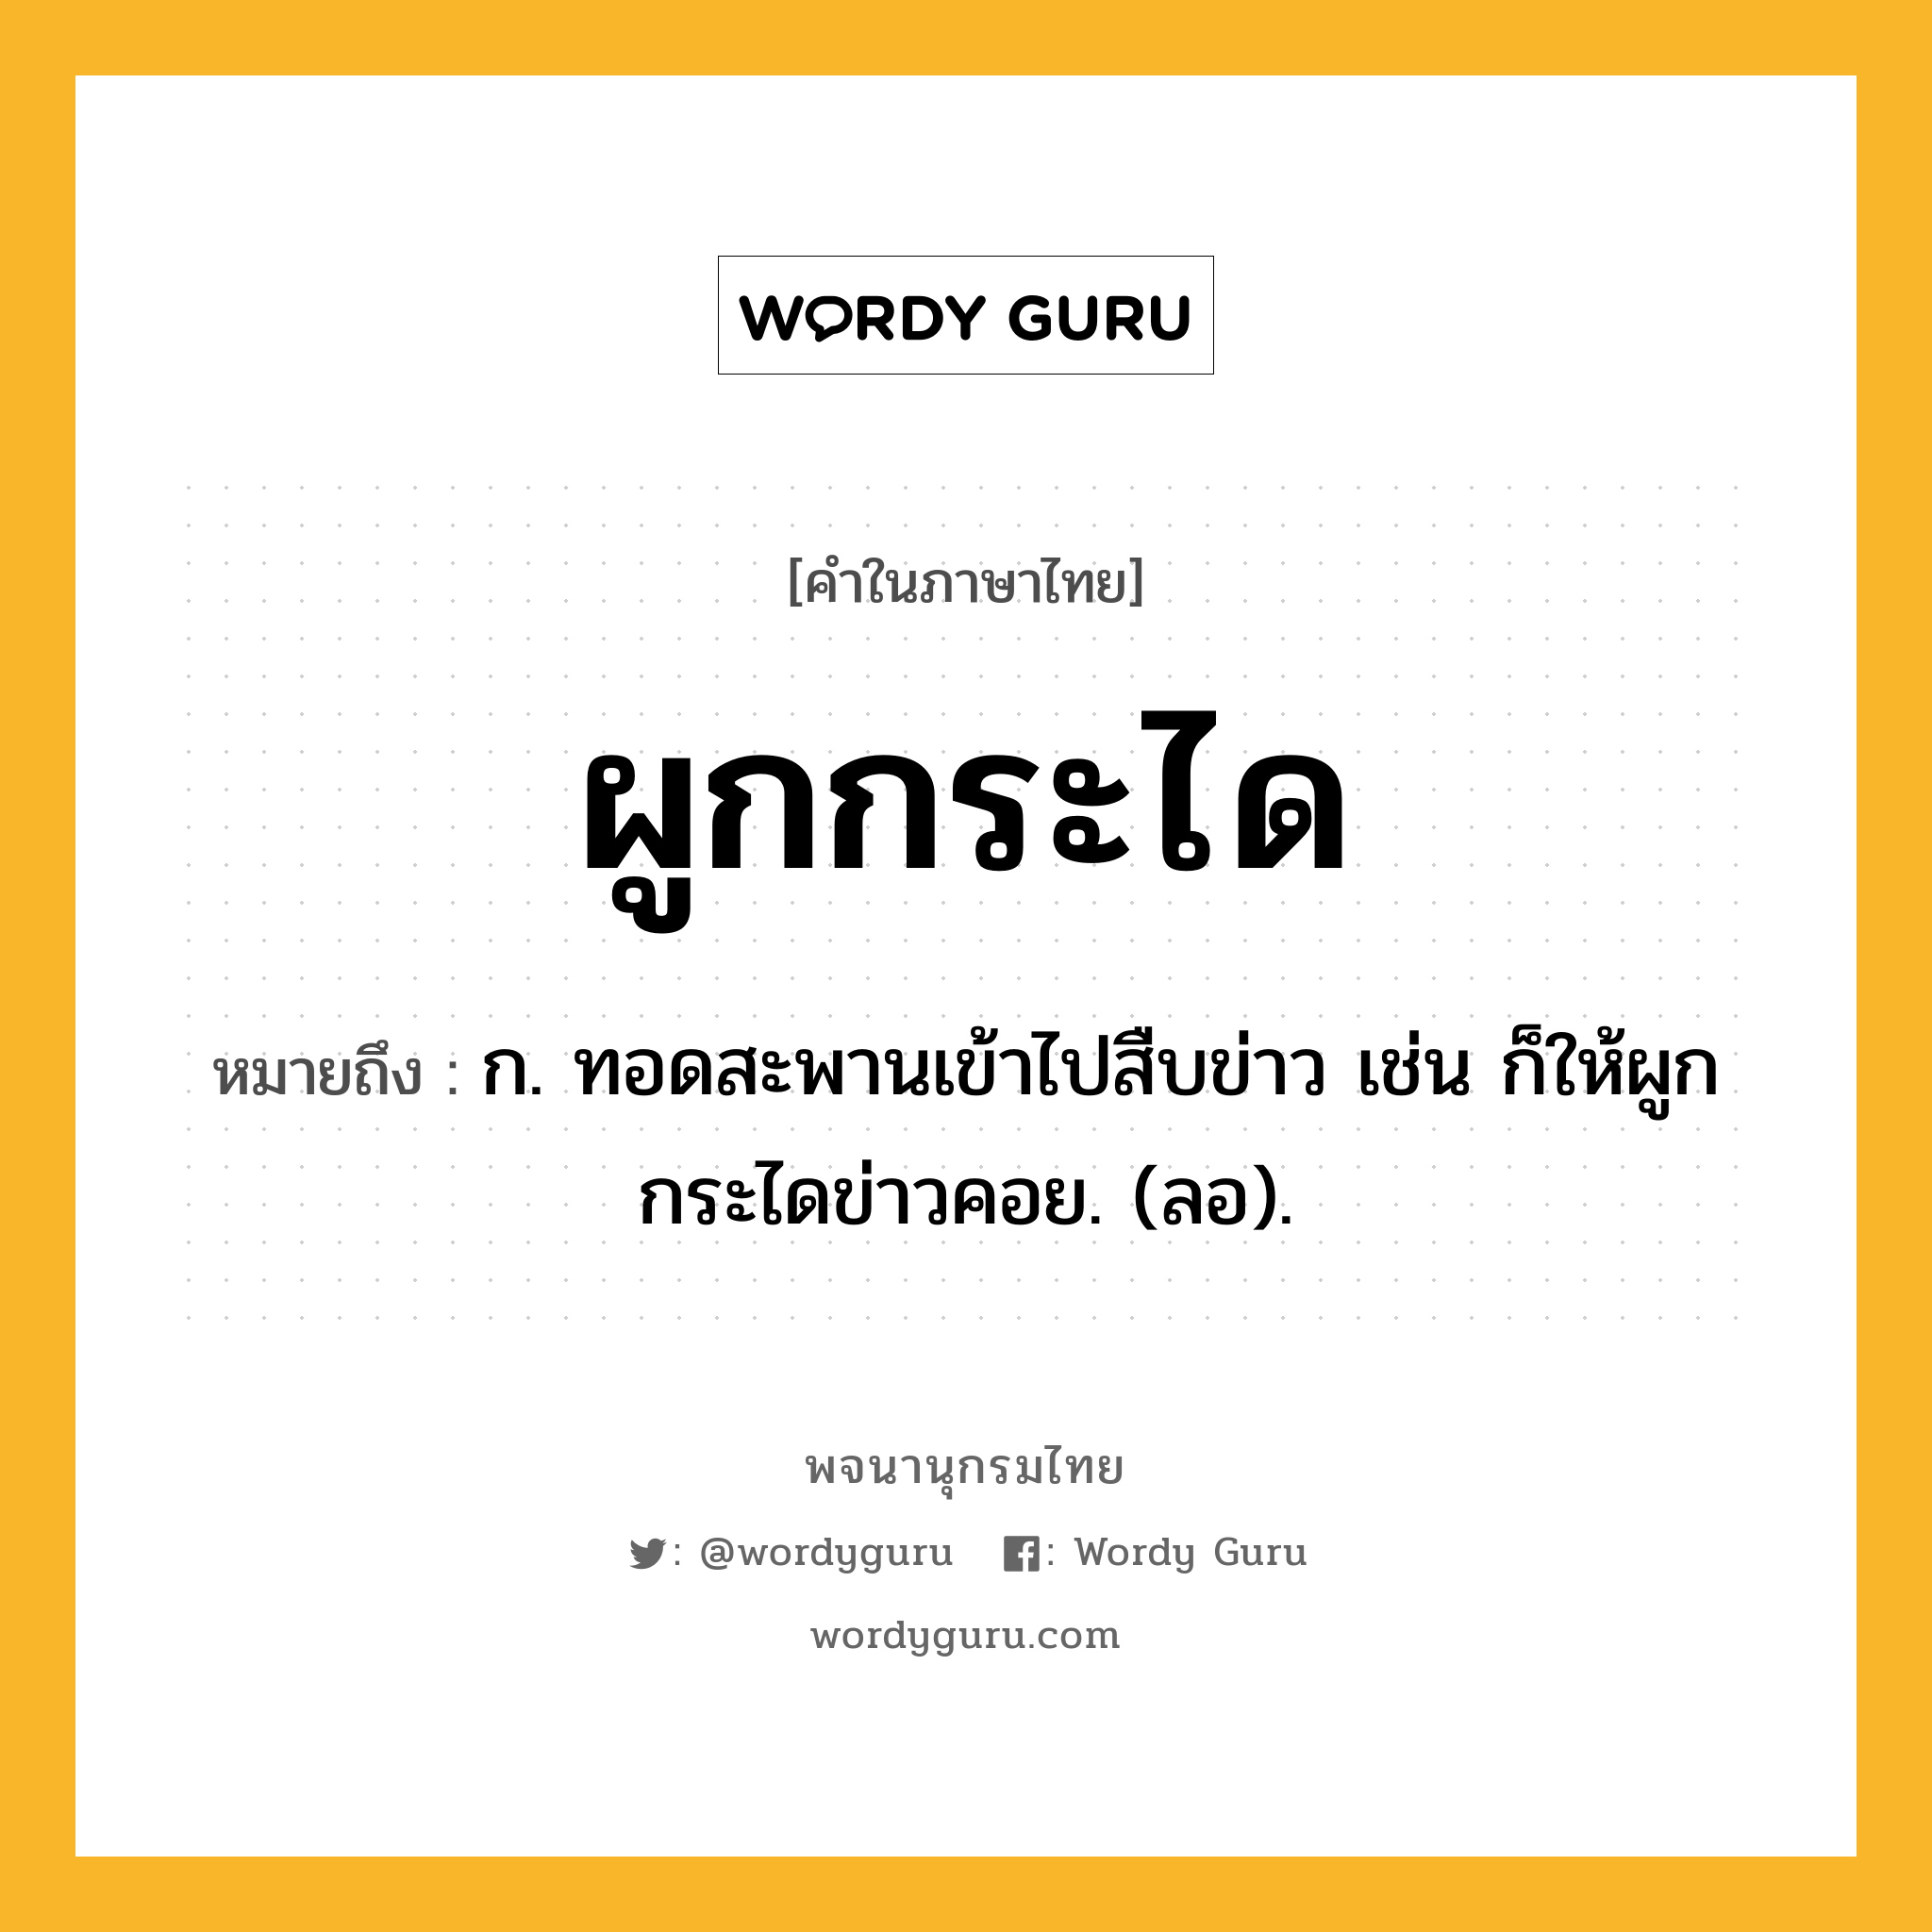 ผูกกระได ความหมาย หมายถึงอะไร?, คำในภาษาไทย ผูกกระได หมายถึง ก. ทอดสะพานเข้าไปสืบข่าว เช่น ก็ให้ผูกกระไดข่าวคอย. (ลอ).